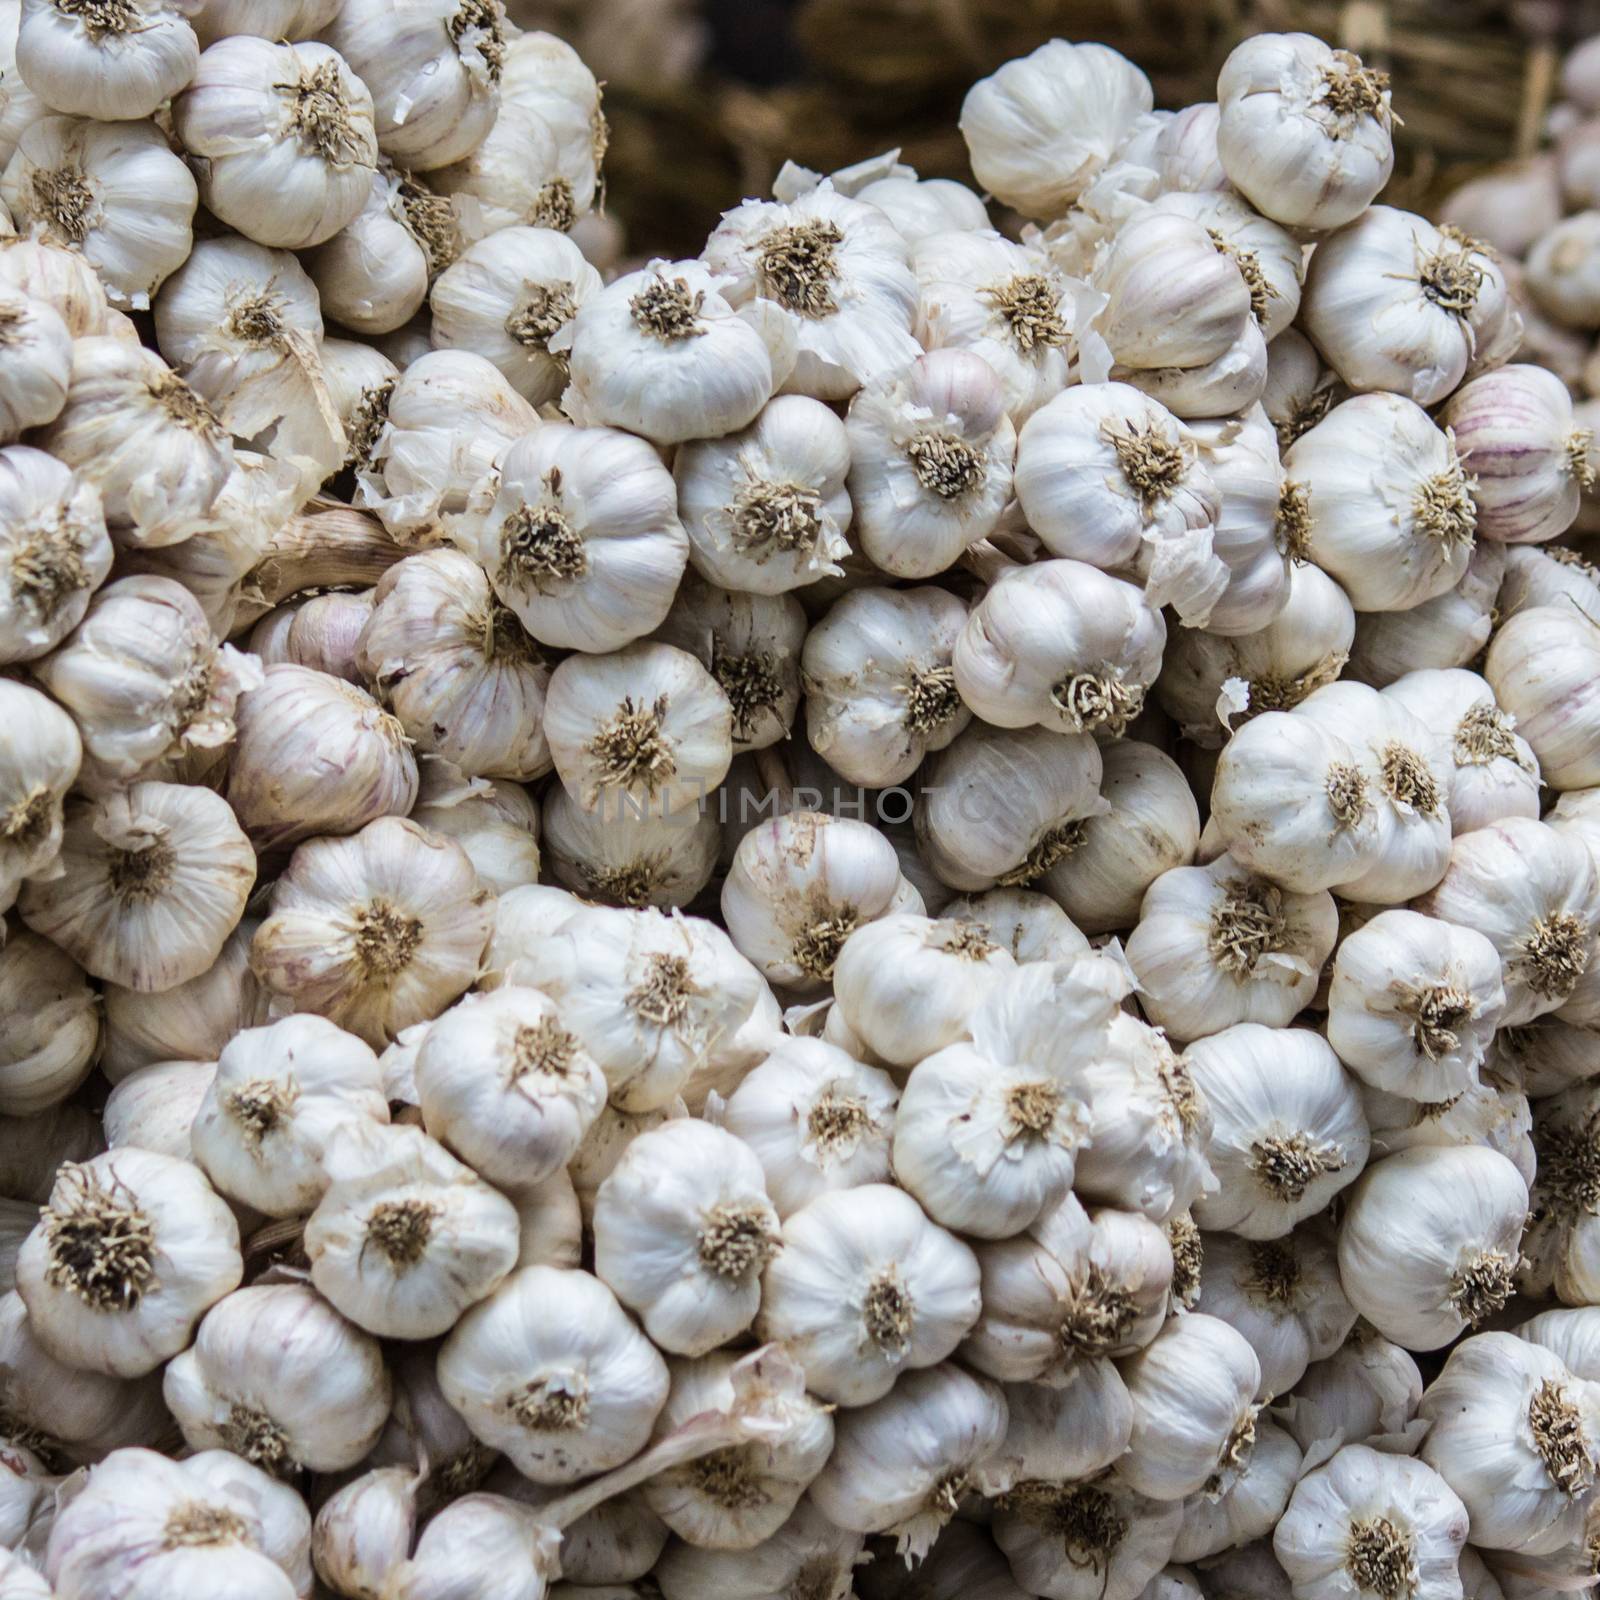 Fresh garlic in the market